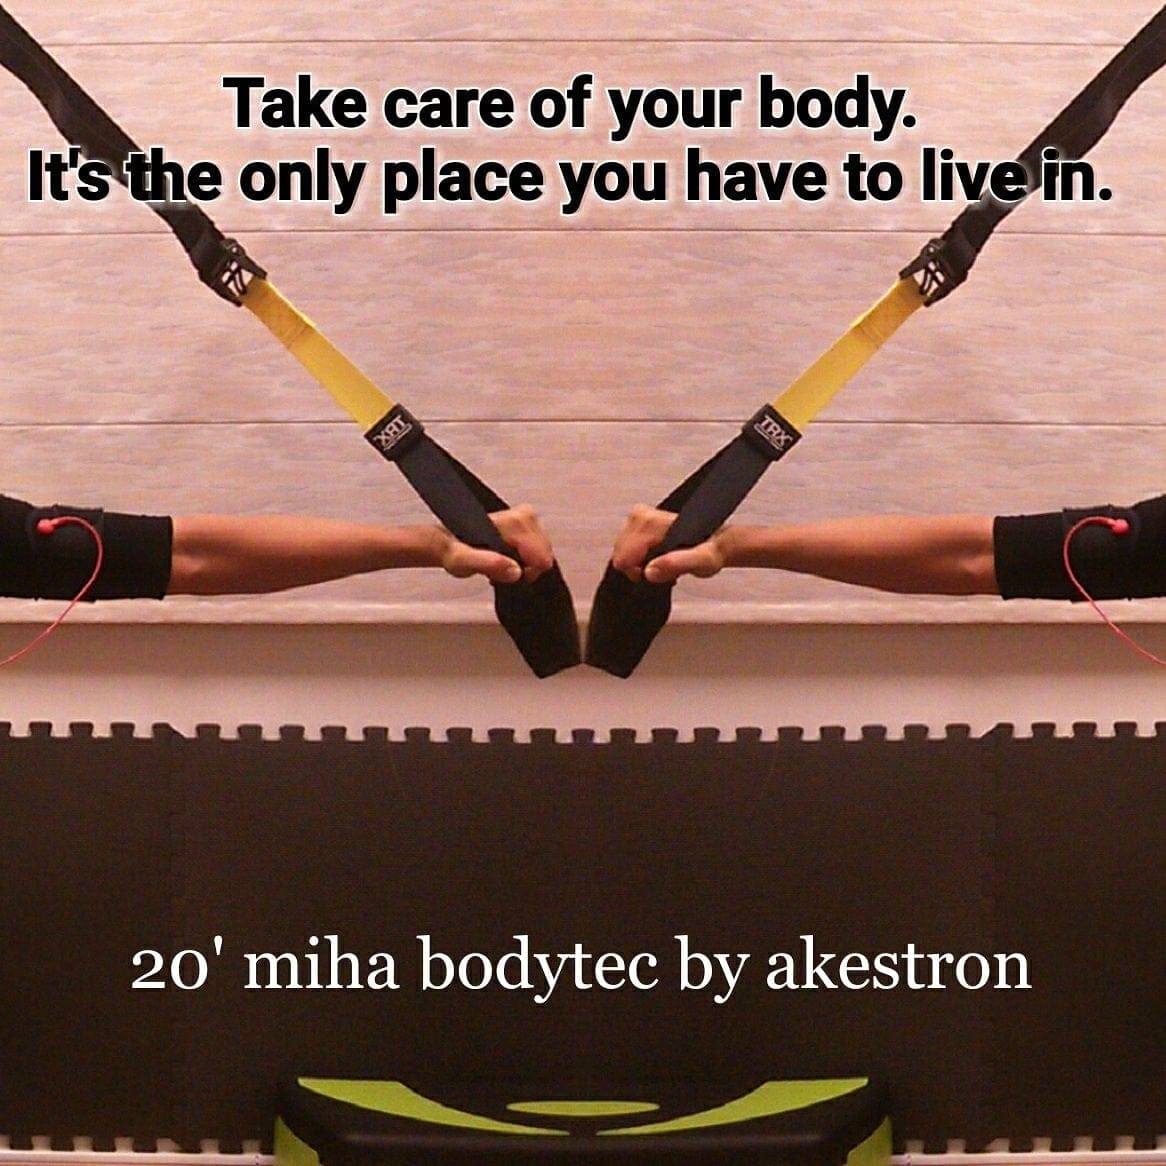 20' miha bodytec by akestron